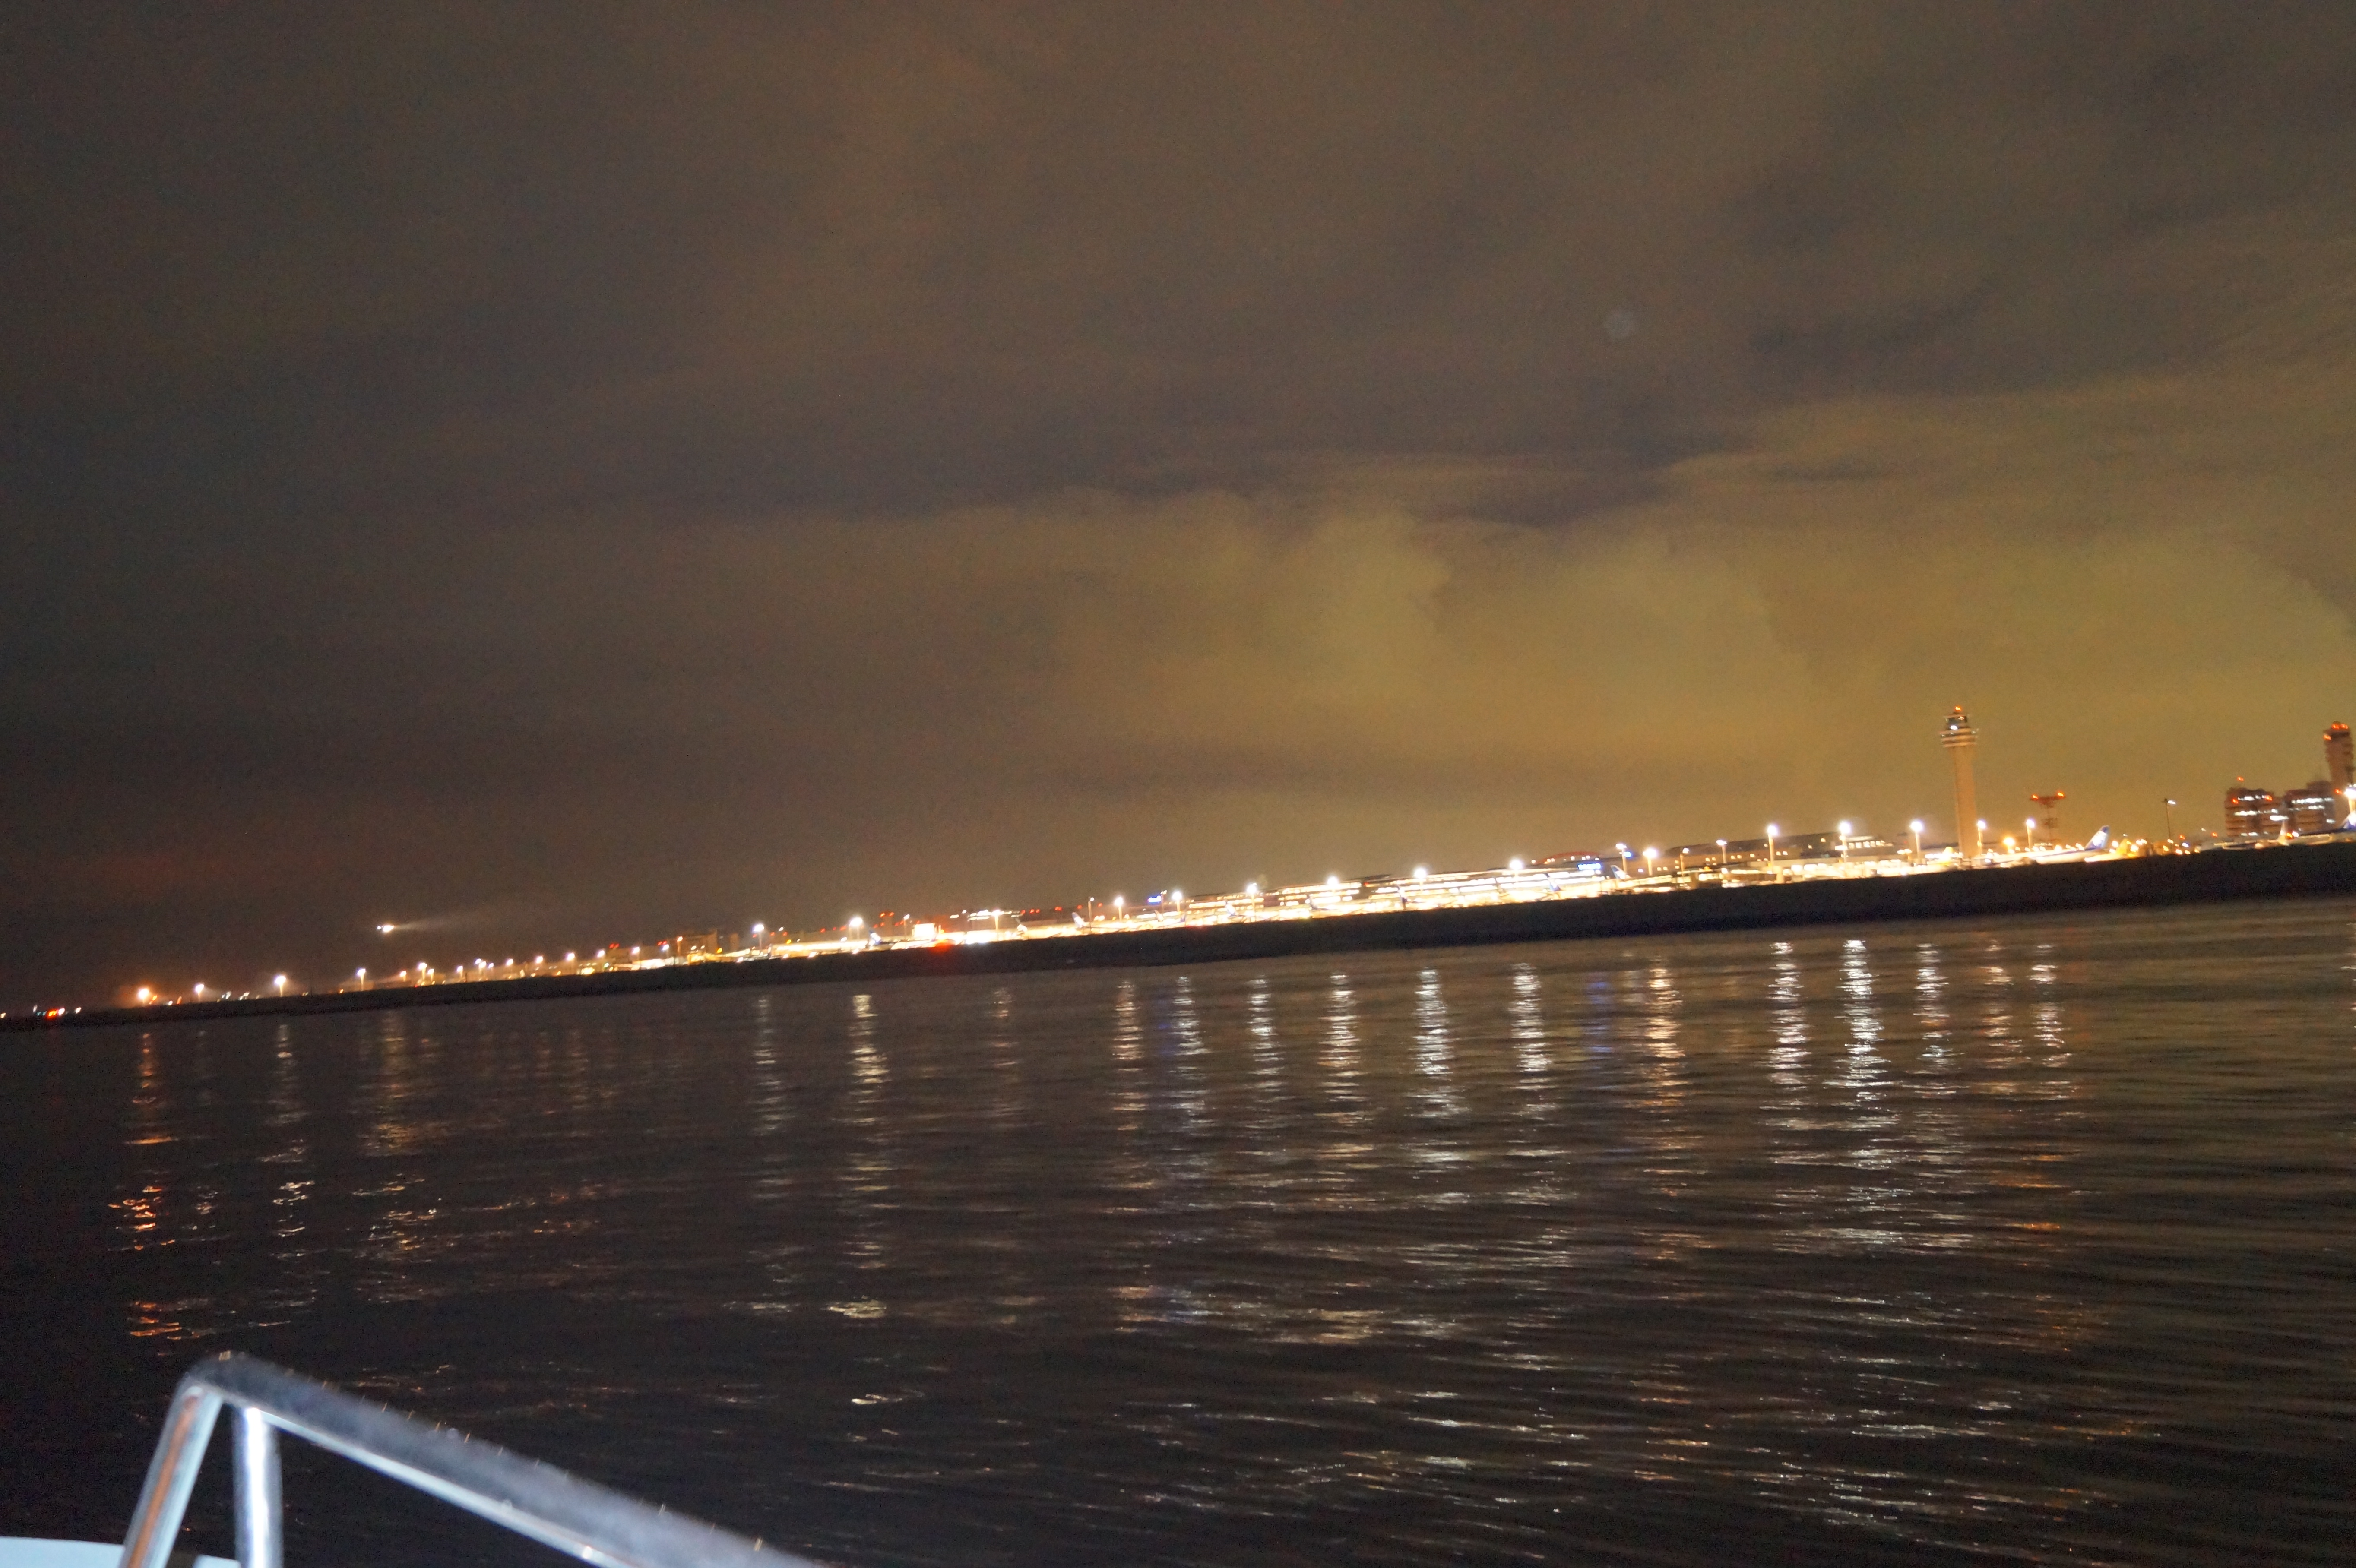 船上から見える夜景の様子